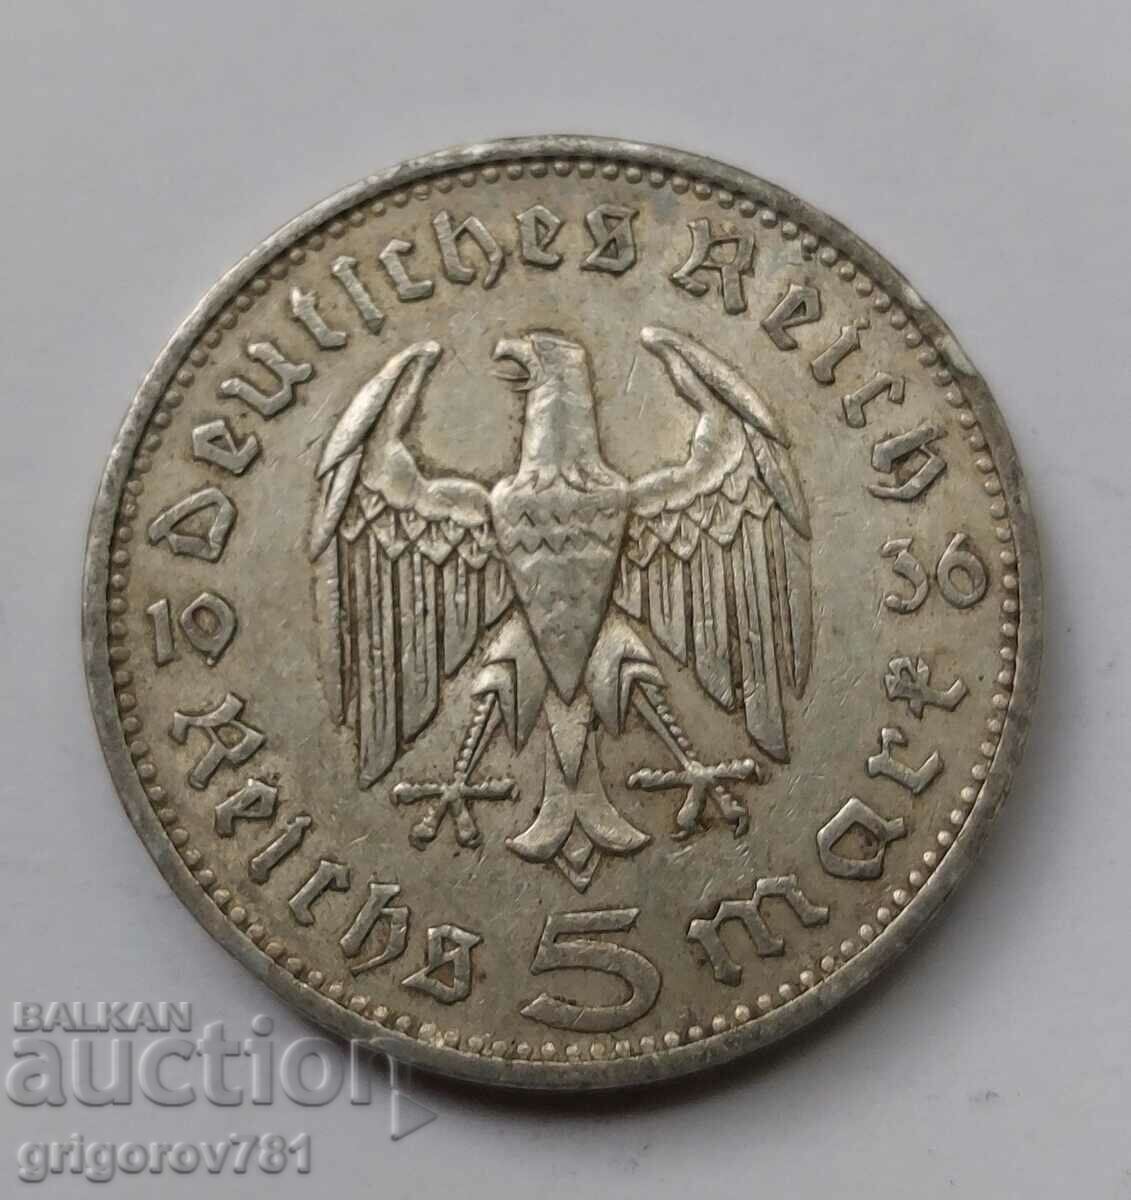 5 mărci de argint Germania 1936 A III Reich Monedă de argint #39